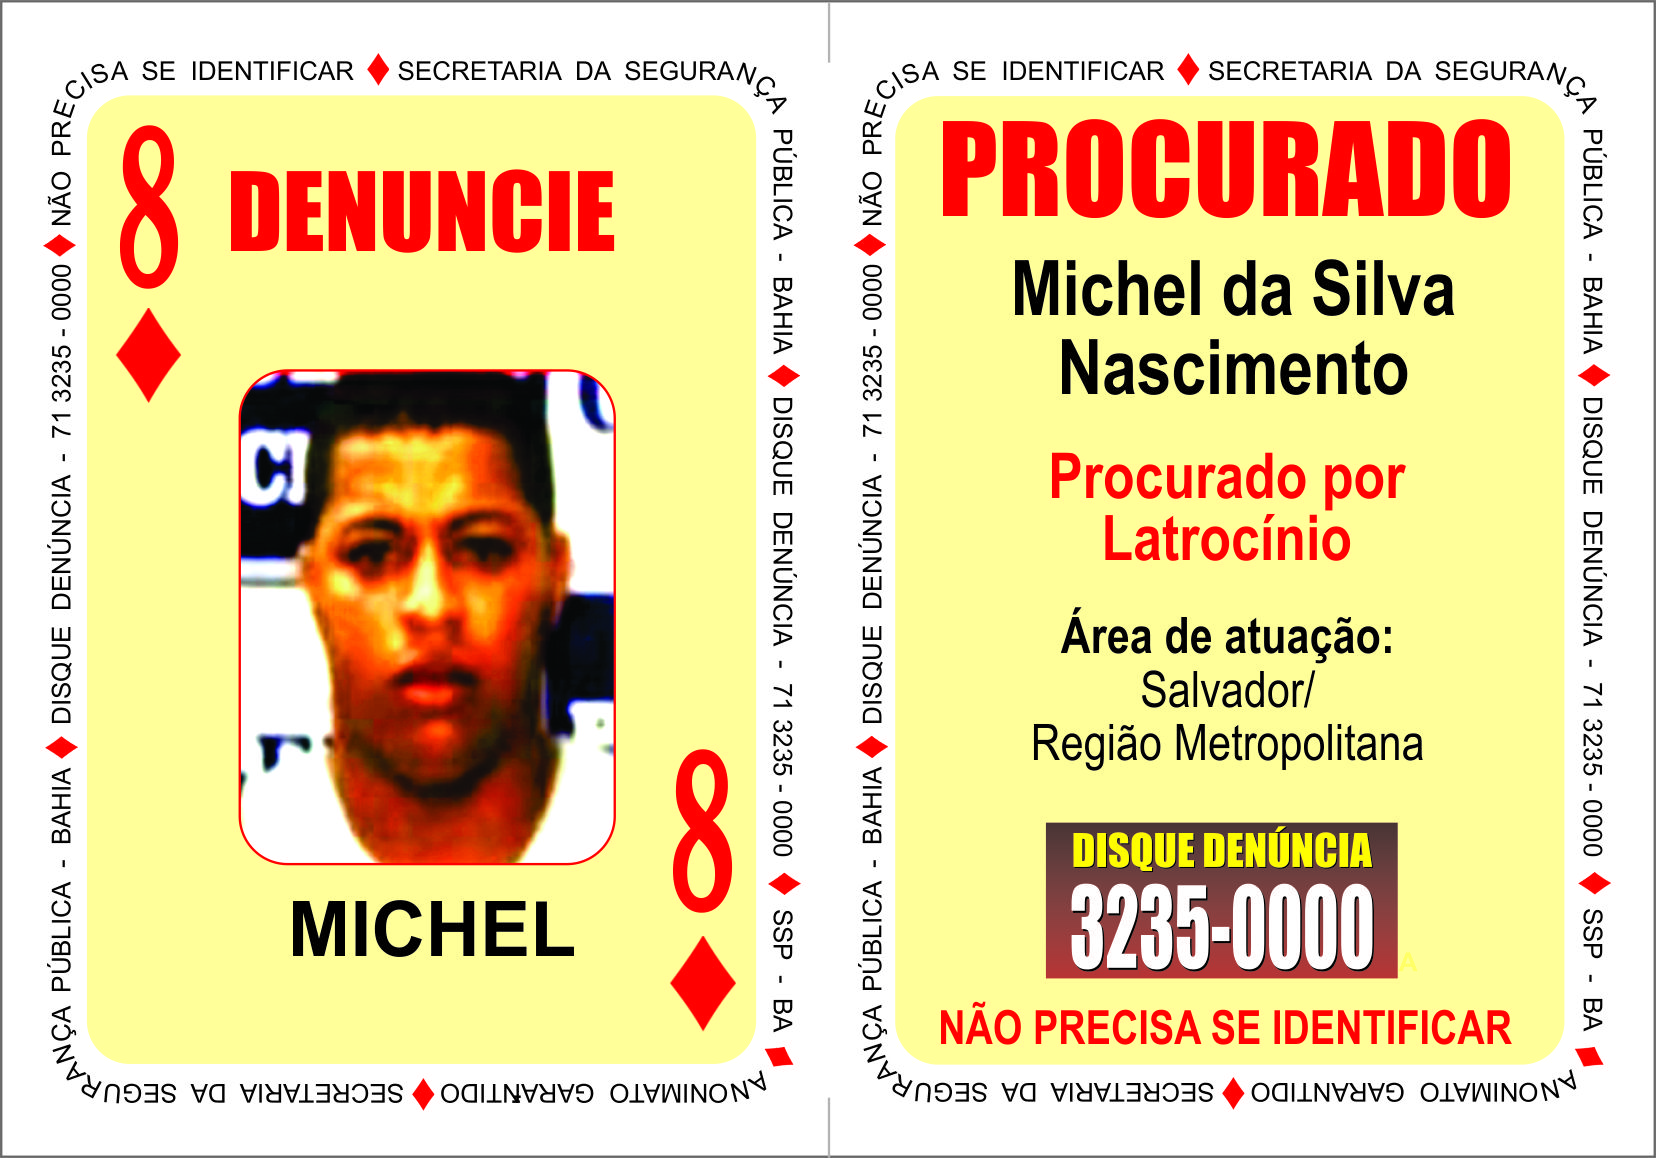 Criminosos da Região Metropolitana são procurados pela polícia